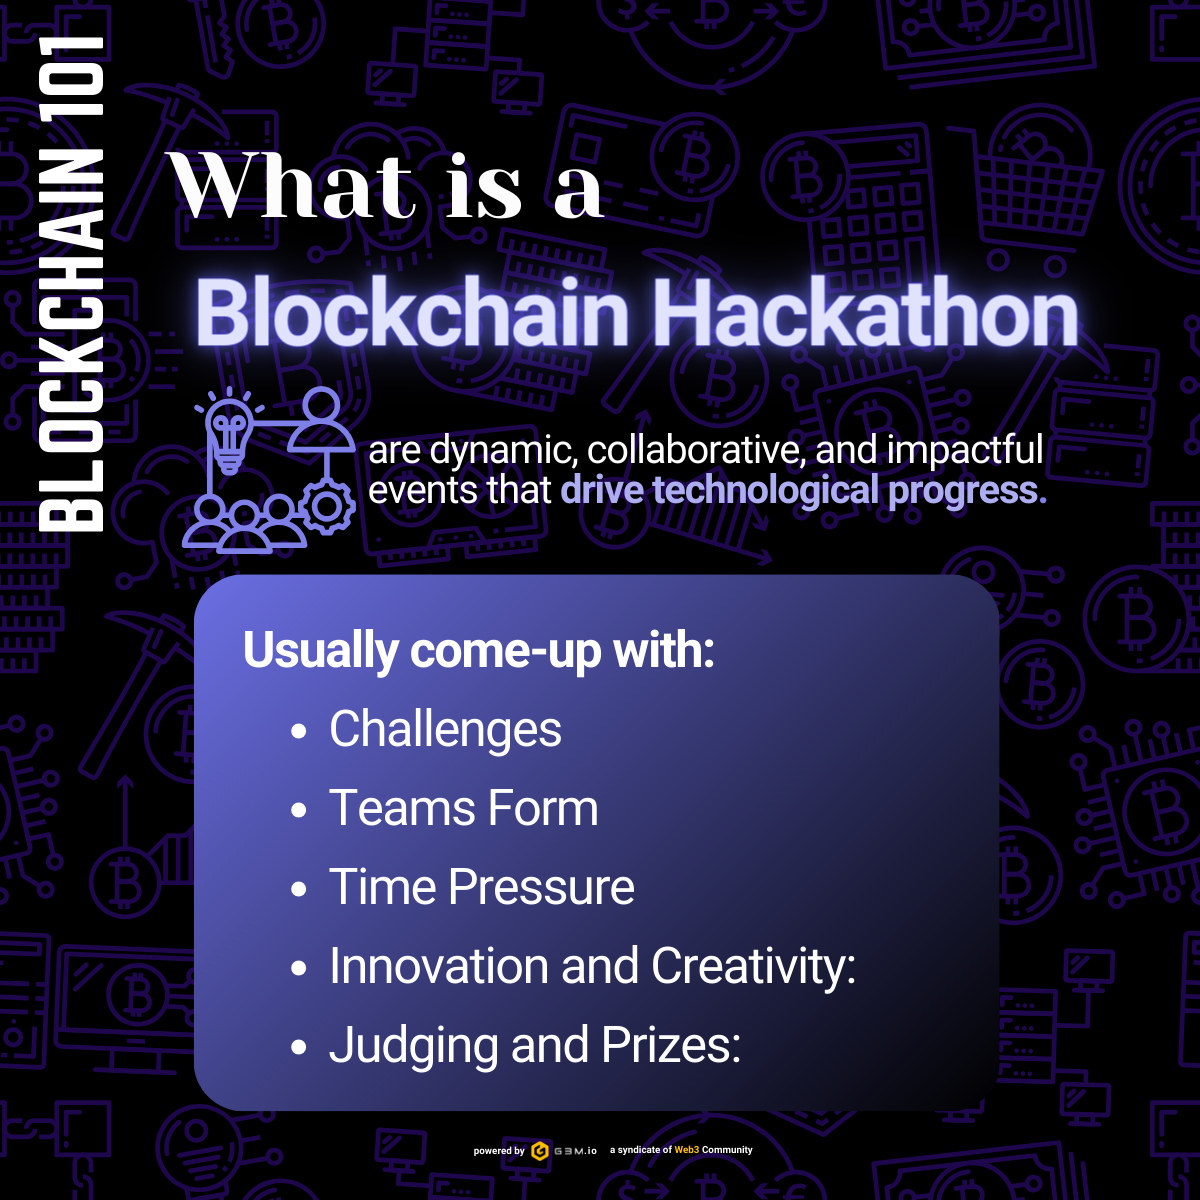 What Is a Blockchain Hackathon?